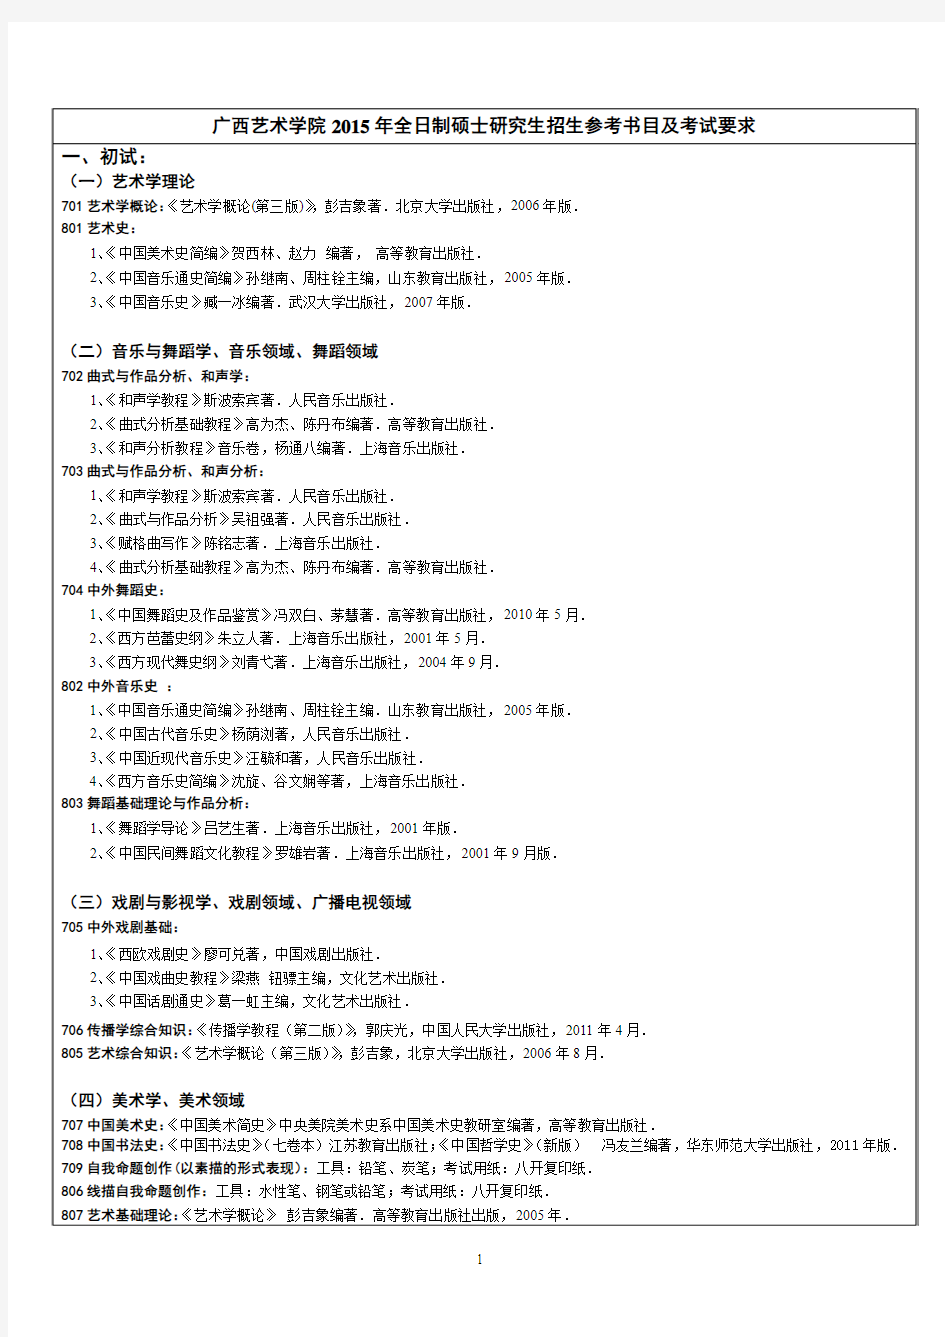 广西艺术学院2015年全日制硕士研究生招生参考书目及考试要求